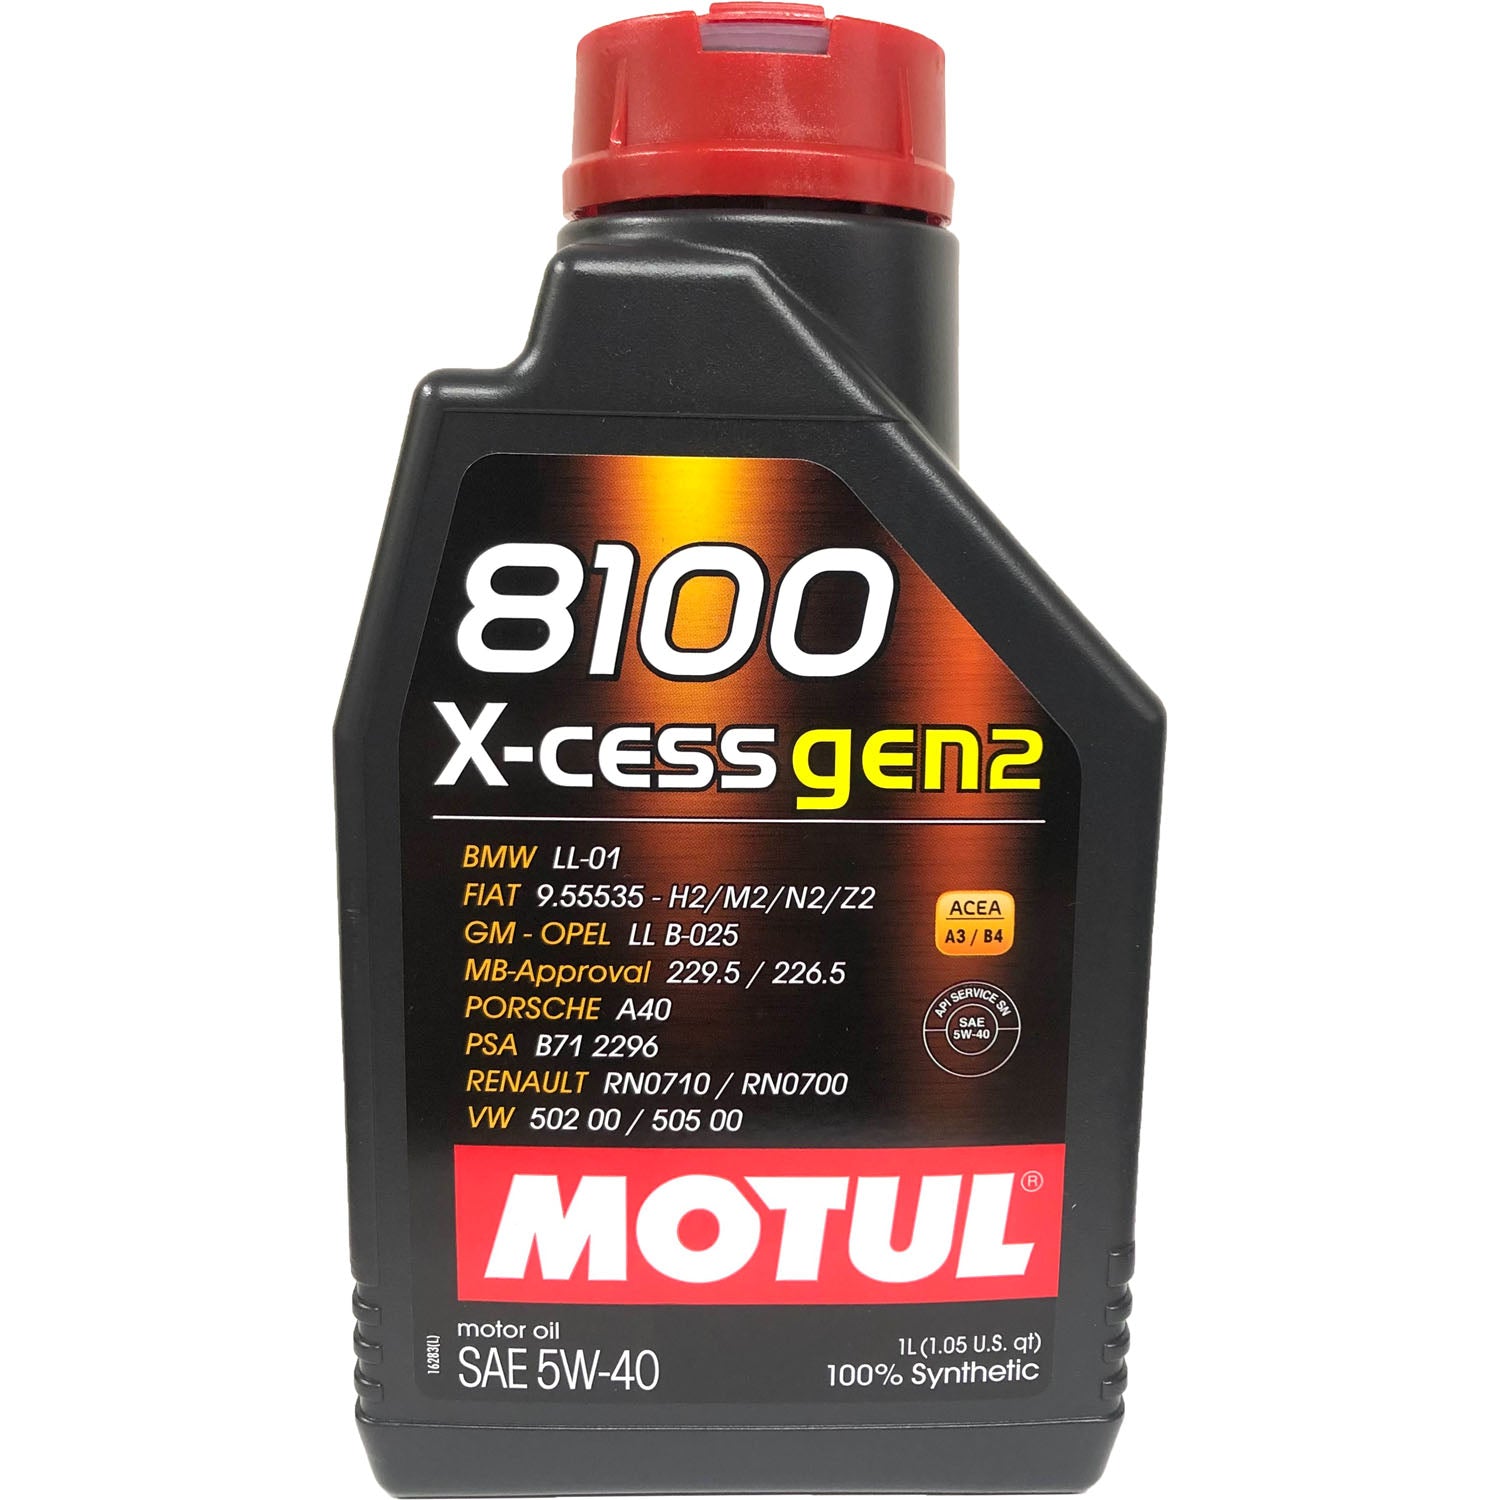 Motul 8100 X-Cess Gen2 Synthetic Motor Oil 5W40 - 1 Liter